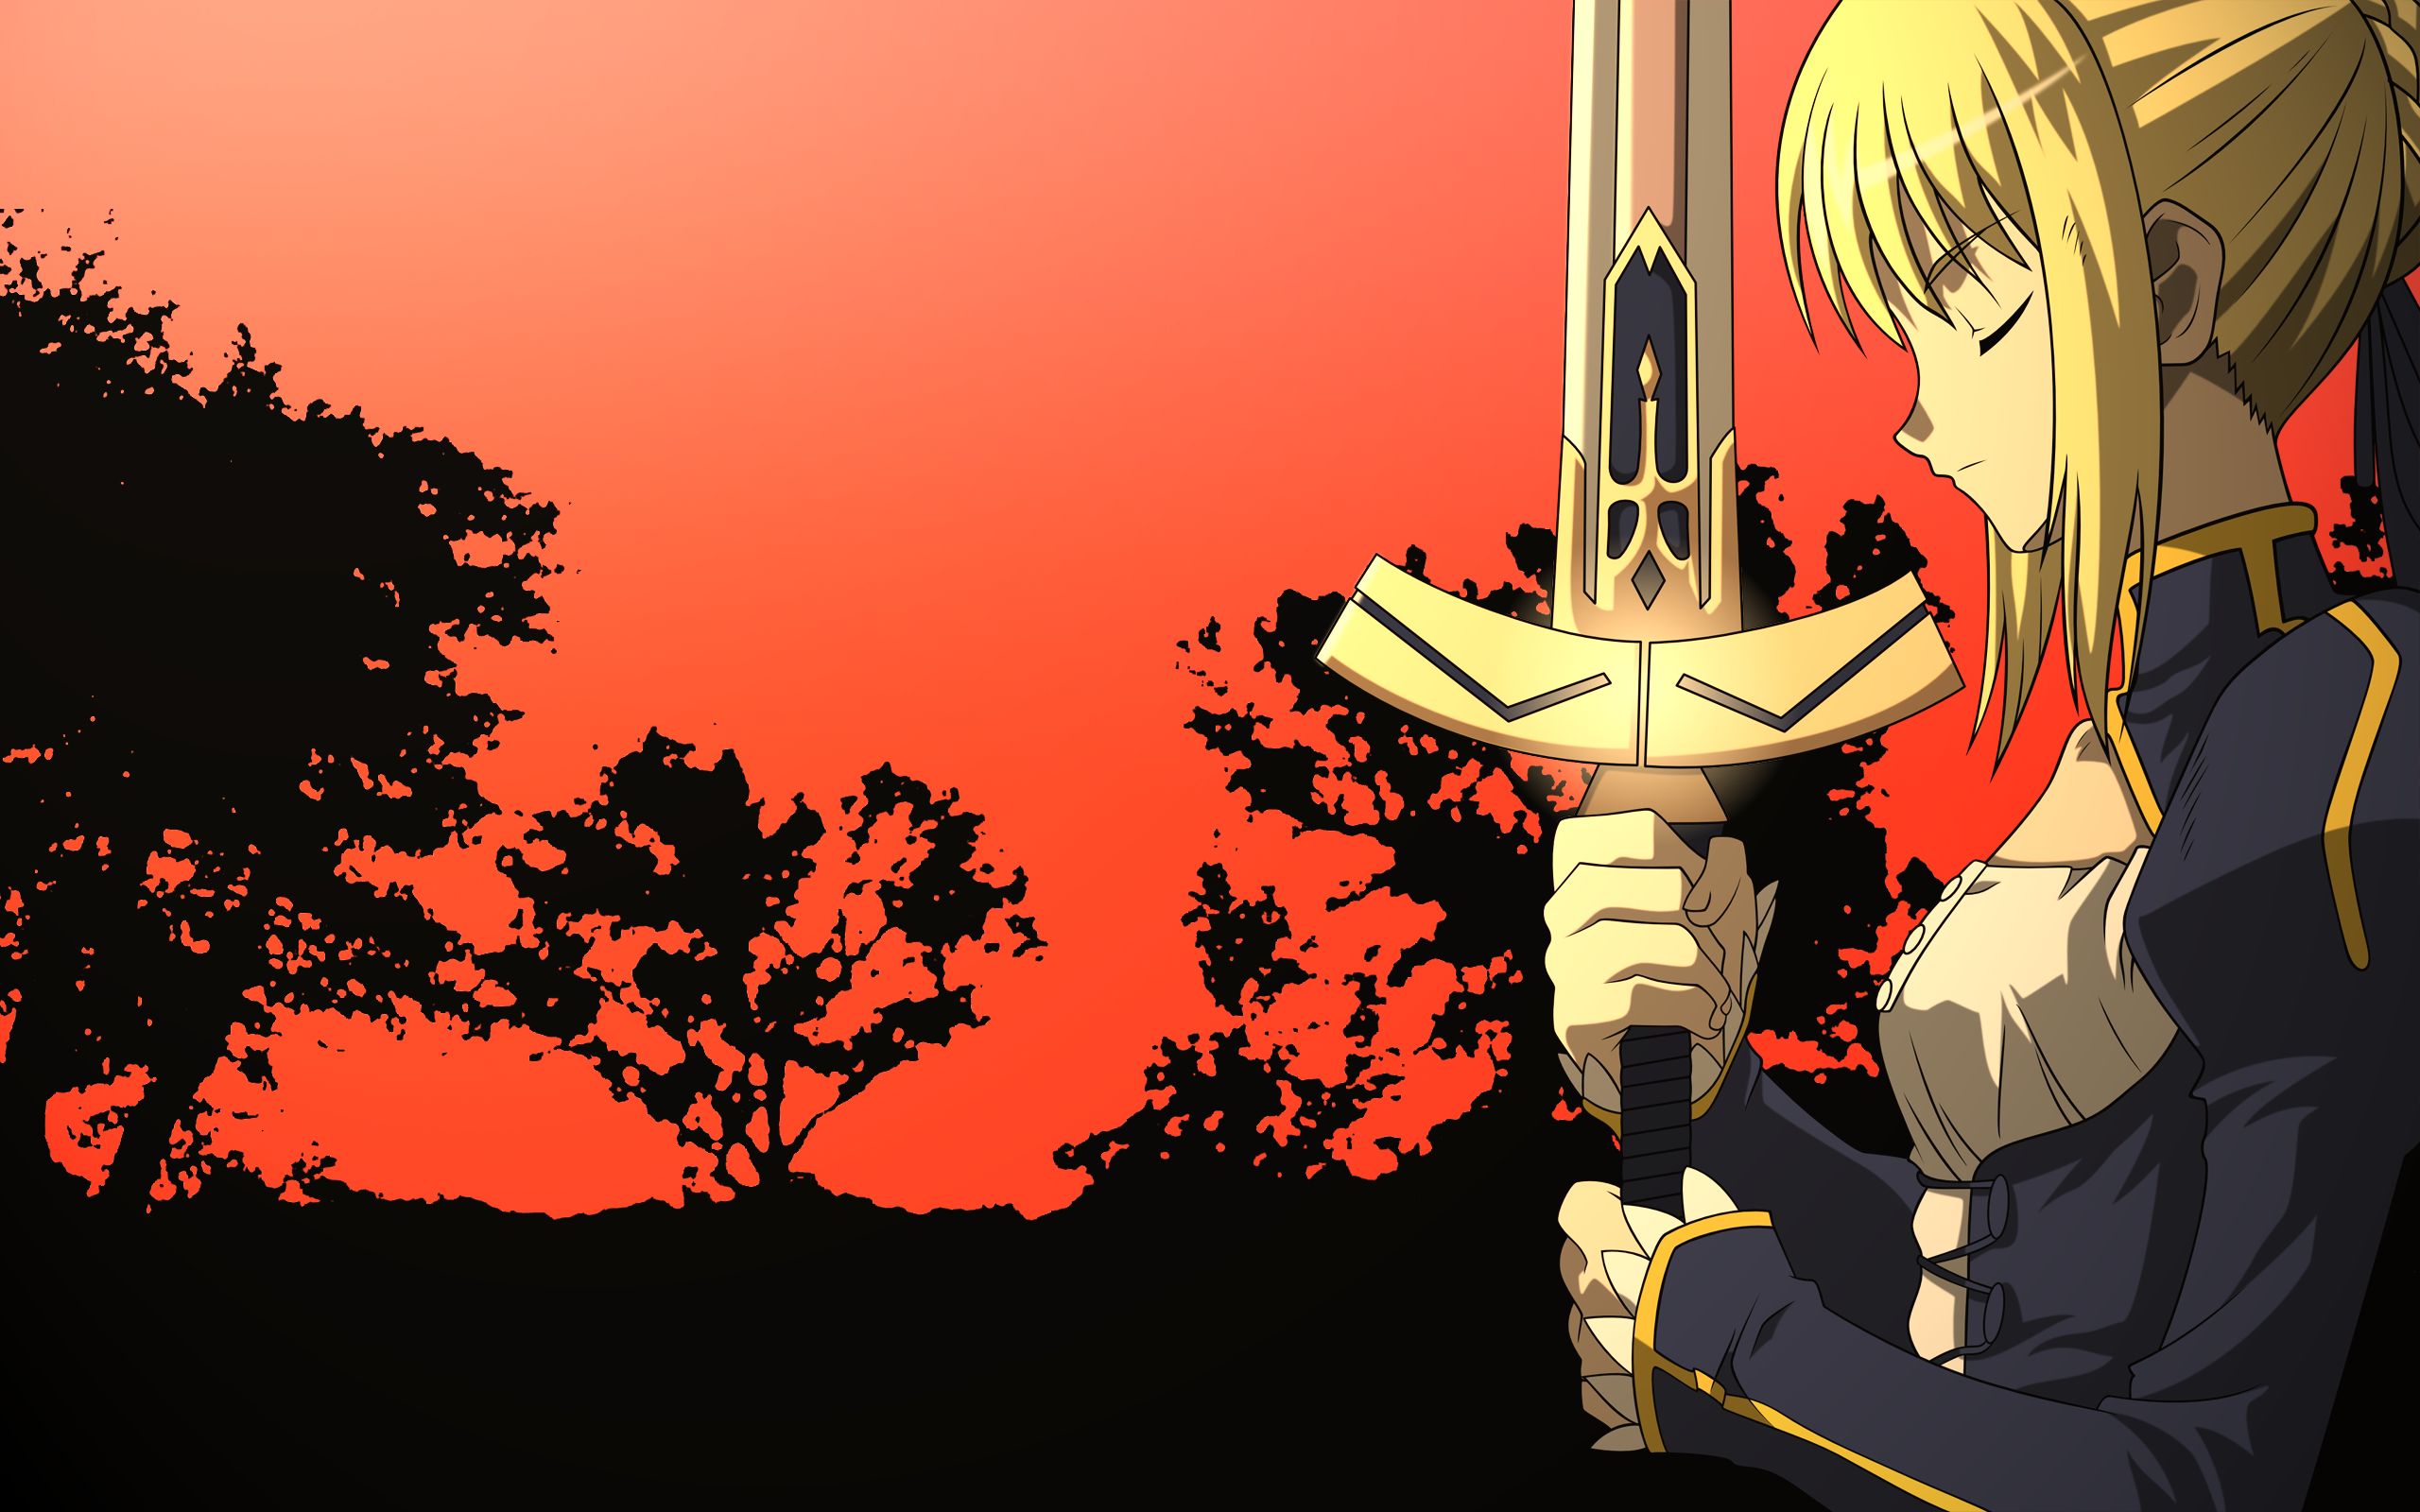 Descarga gratuita de fondo de pantalla para móvil de Fate/stay Night, Sable (Serie Destino), Serie Del Destino, Animado.